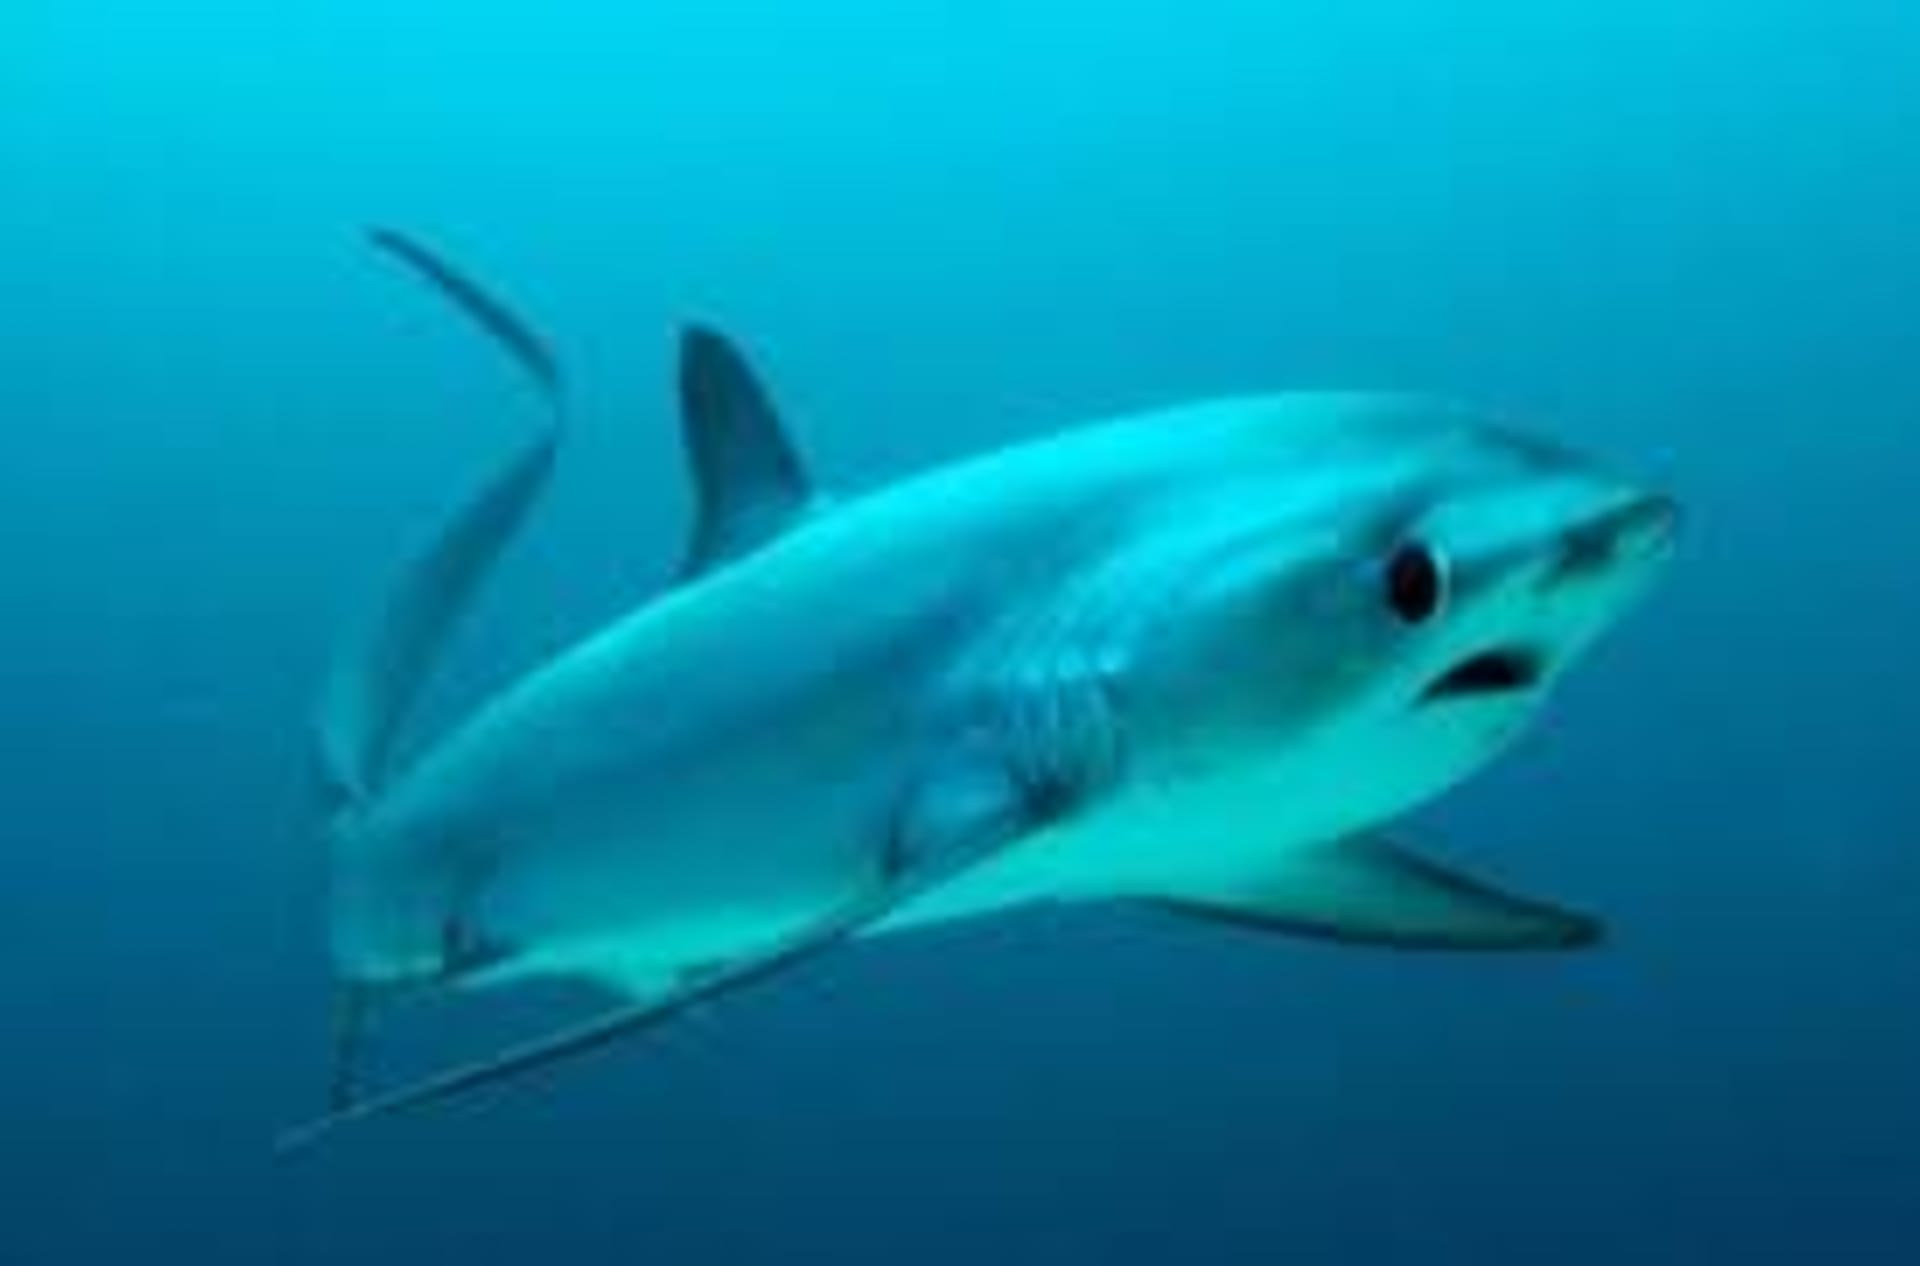 Drtivá většina ploutví patřila liškounům, ohroženému druhu žraloků. Zdroj: WIkipedia